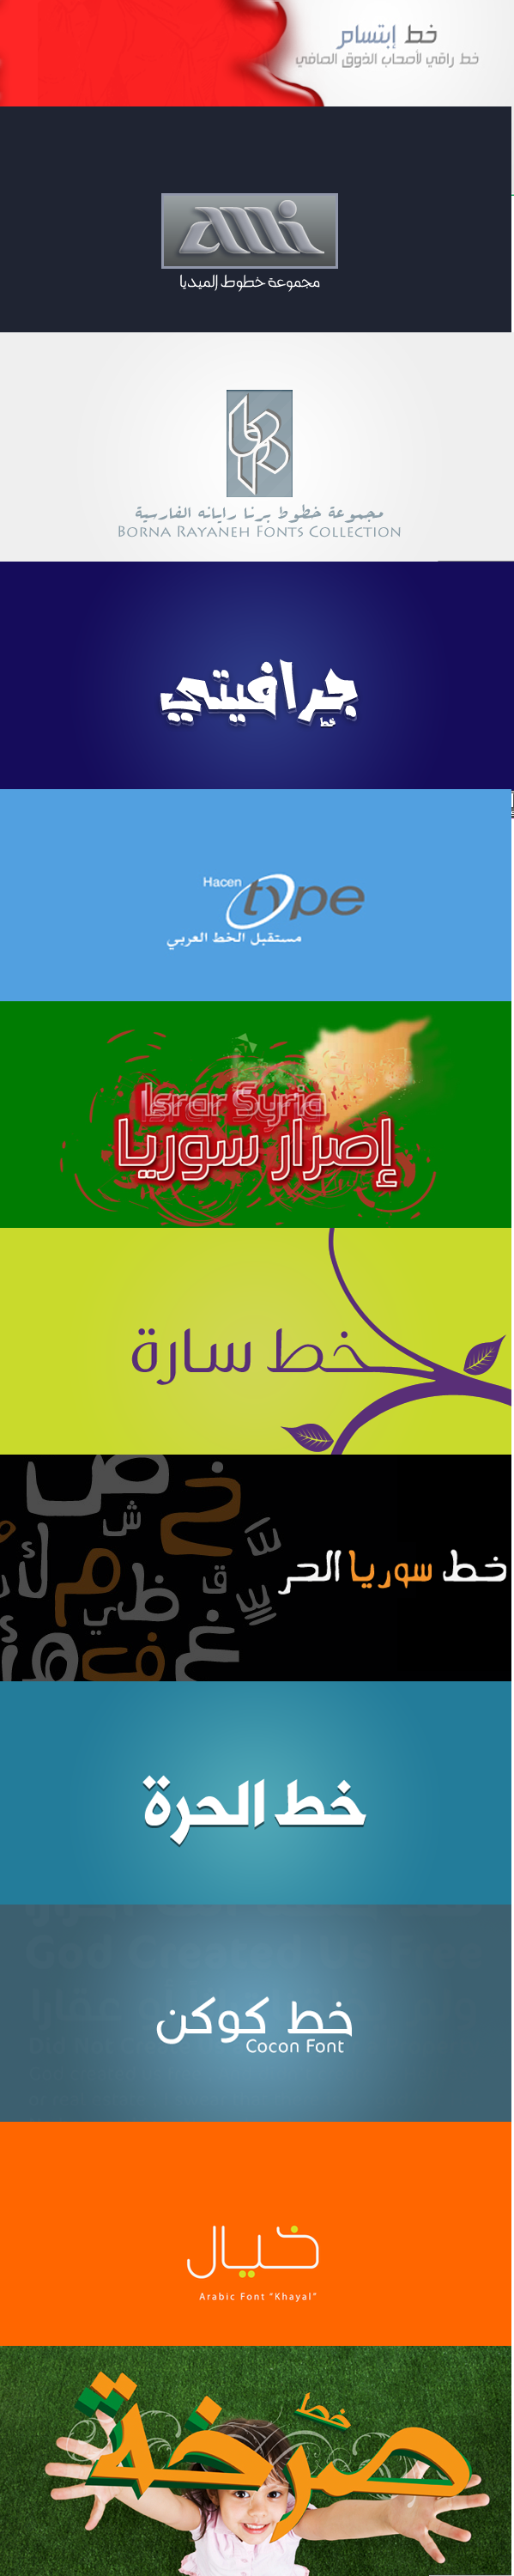 موقع للخطوط العربية الفنية الاحترافية الحصرية لعام 2021 و شرح تركيب